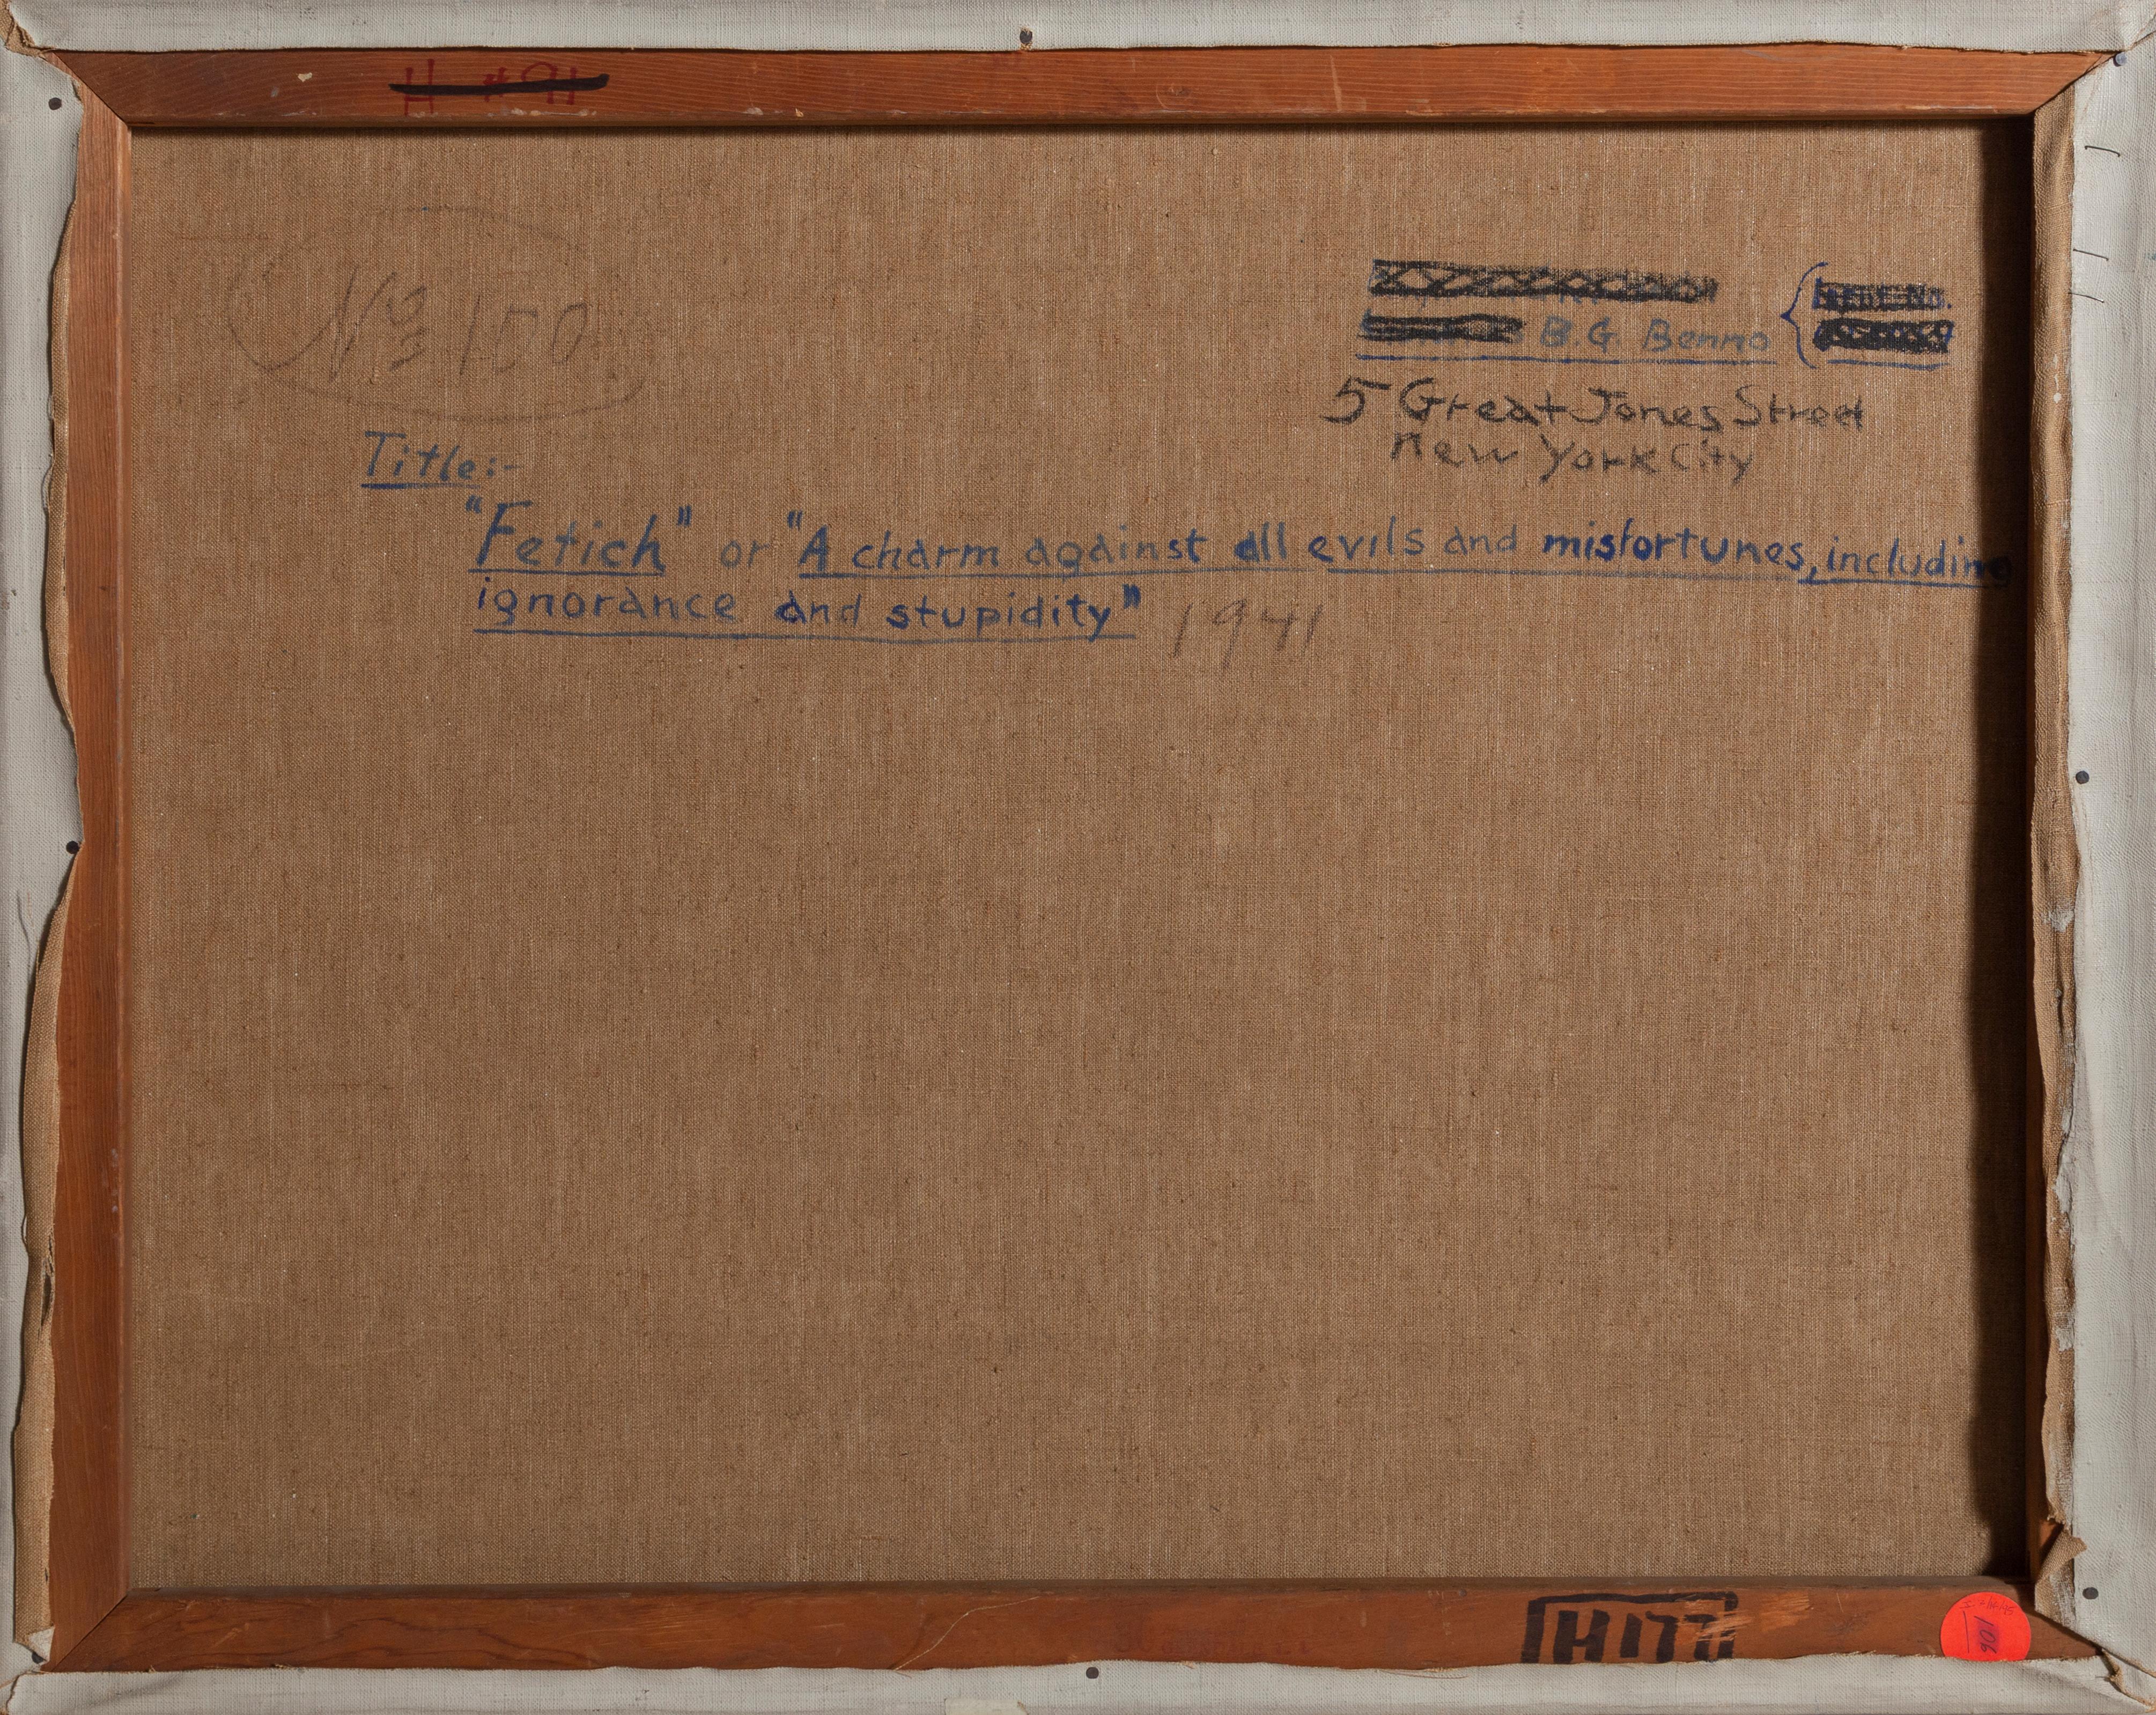 Ein Original-Ölgemälde auf Leinwand von Benjamin Benno, Amerikaner (1901 - 1980), 24 x 30 Zoll, signiert und datiert oben links.  In den frühen 1930er Jahren hatte sich Benno einen Ruf als Mitglied der internationalen Avantgarde erworben und stellte